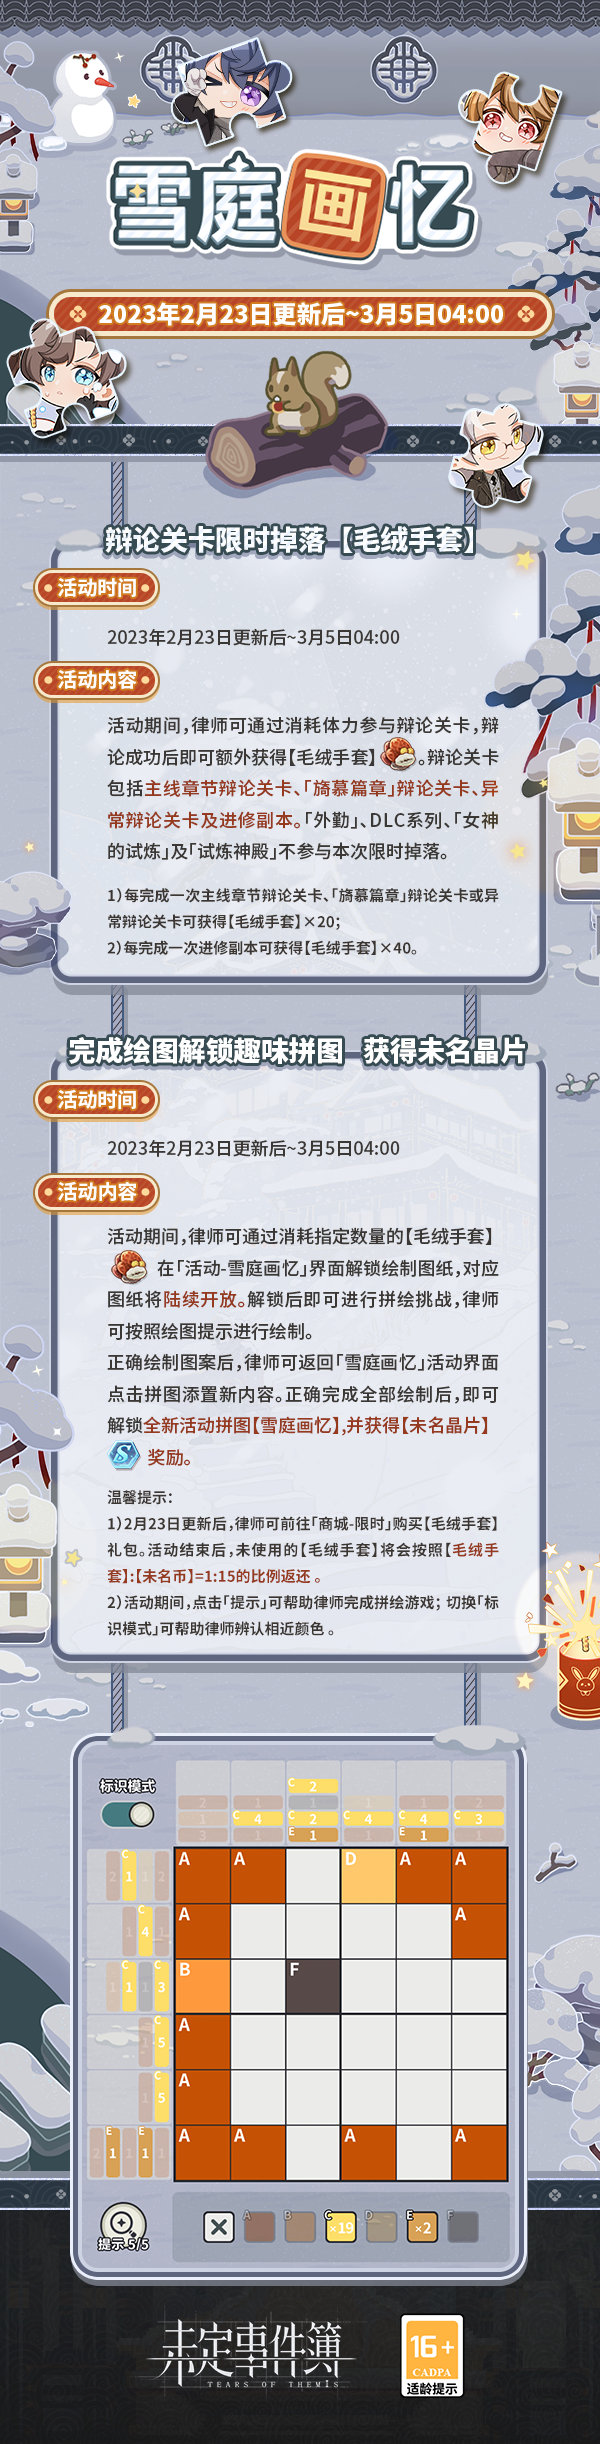 《未定事件簿》雪庭画忆限时活动内容及玩法预告